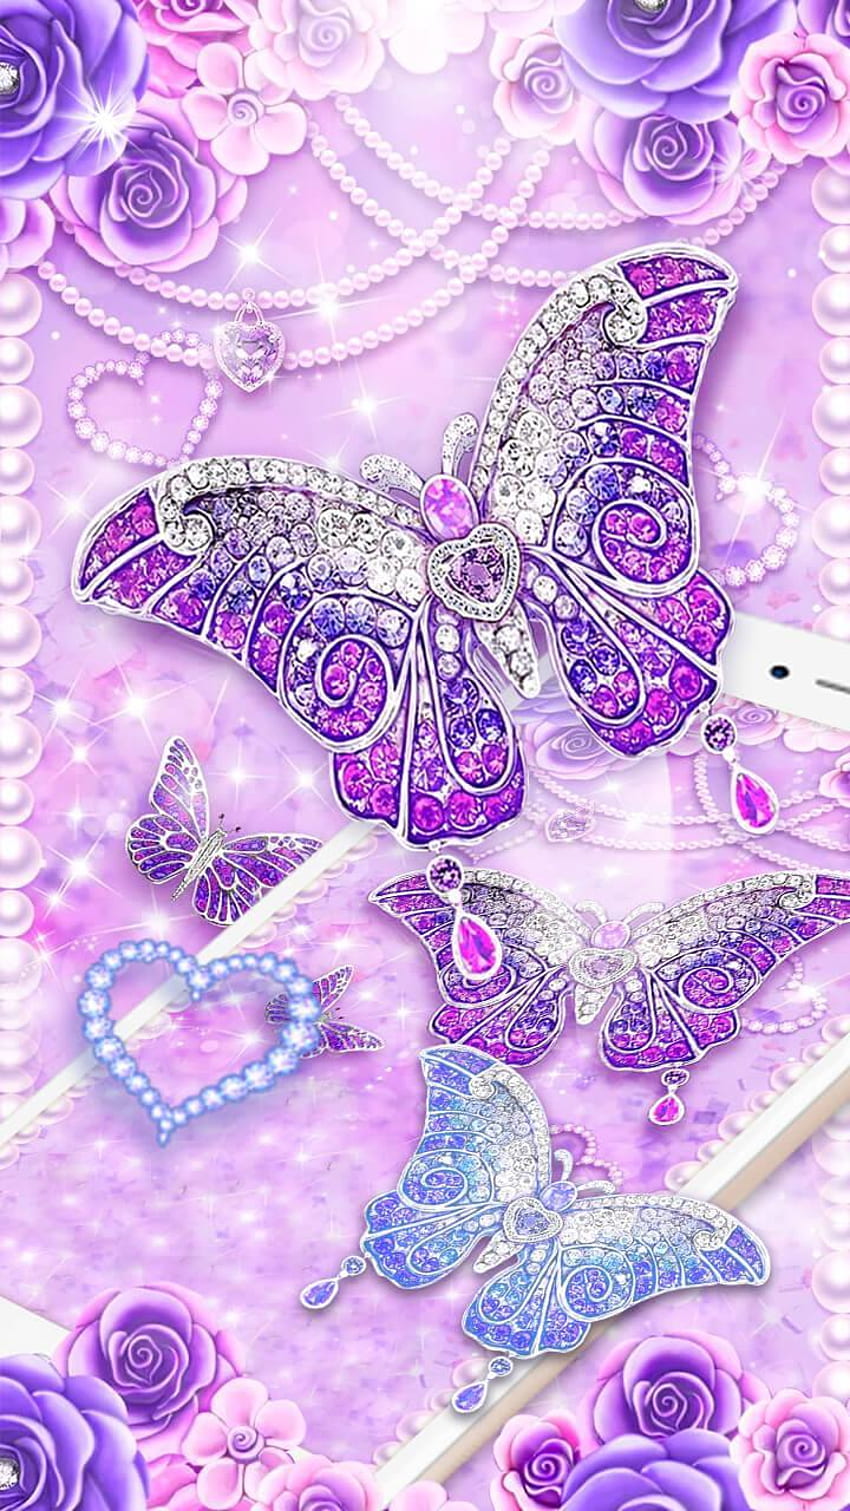 Free Pink Glitter Butterfly Wallpaper  Download in JPG  Templatenet